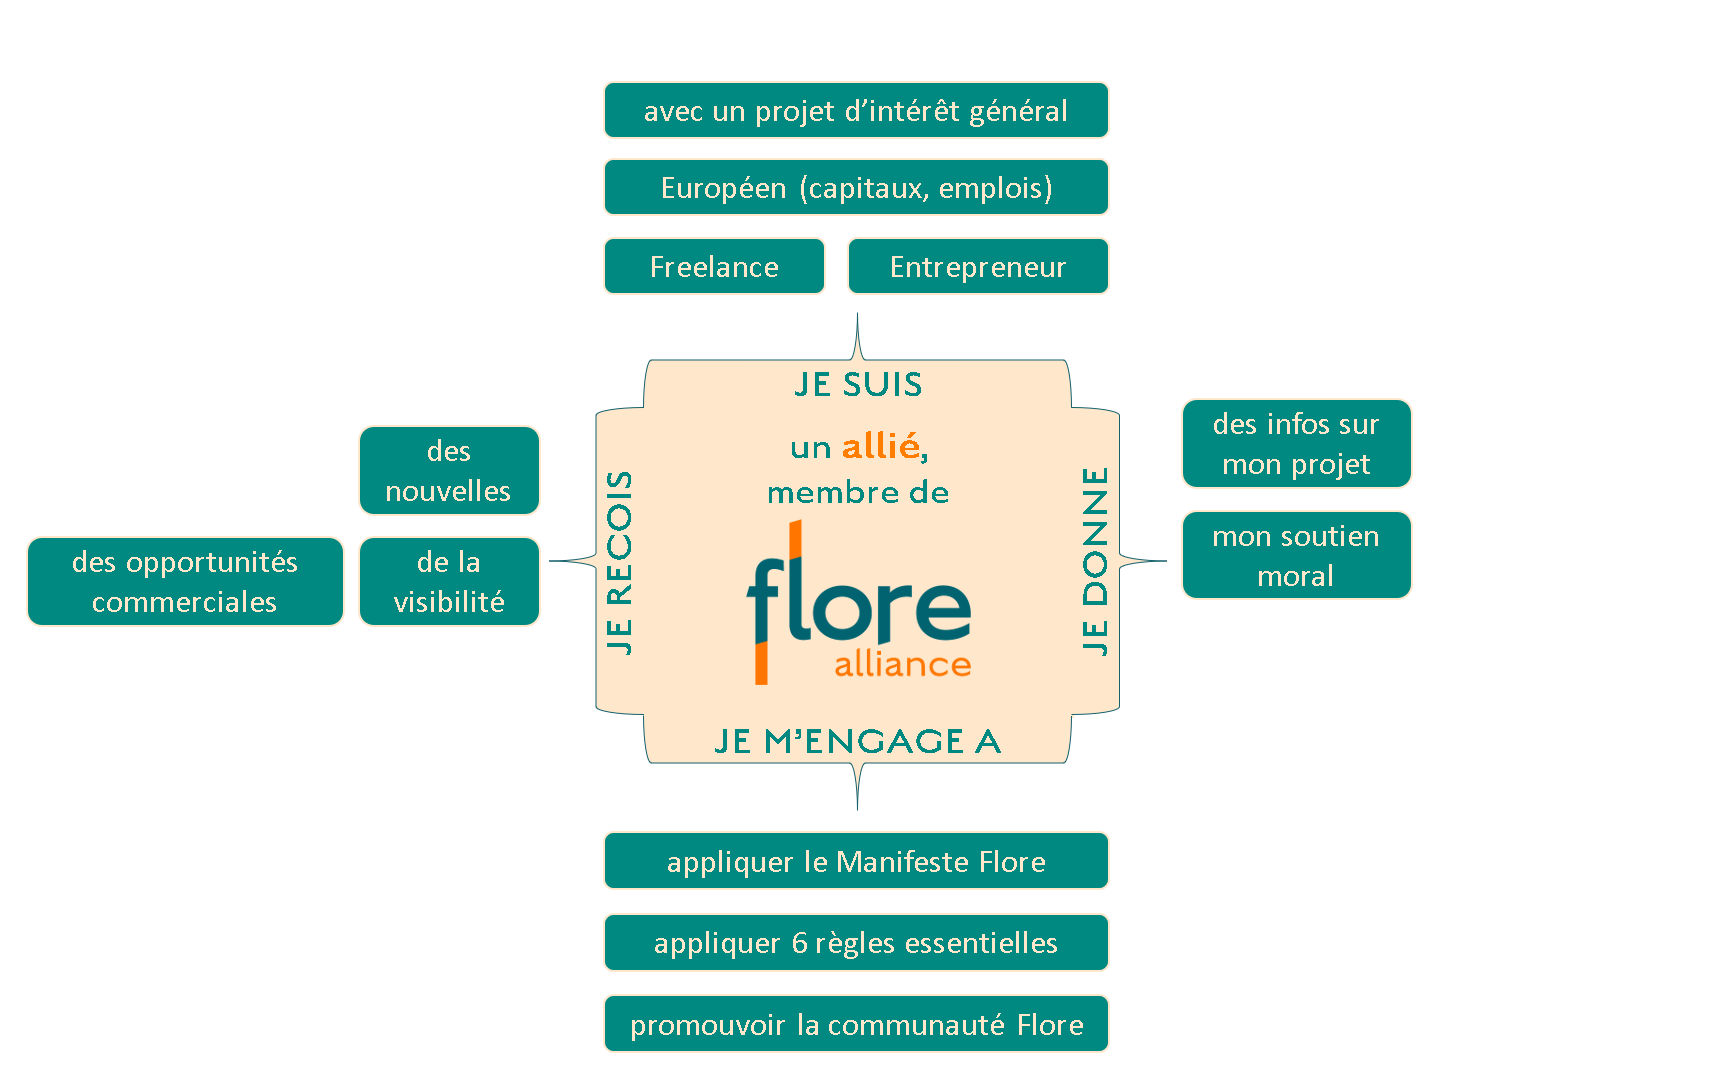 Communauté Flore Alliance